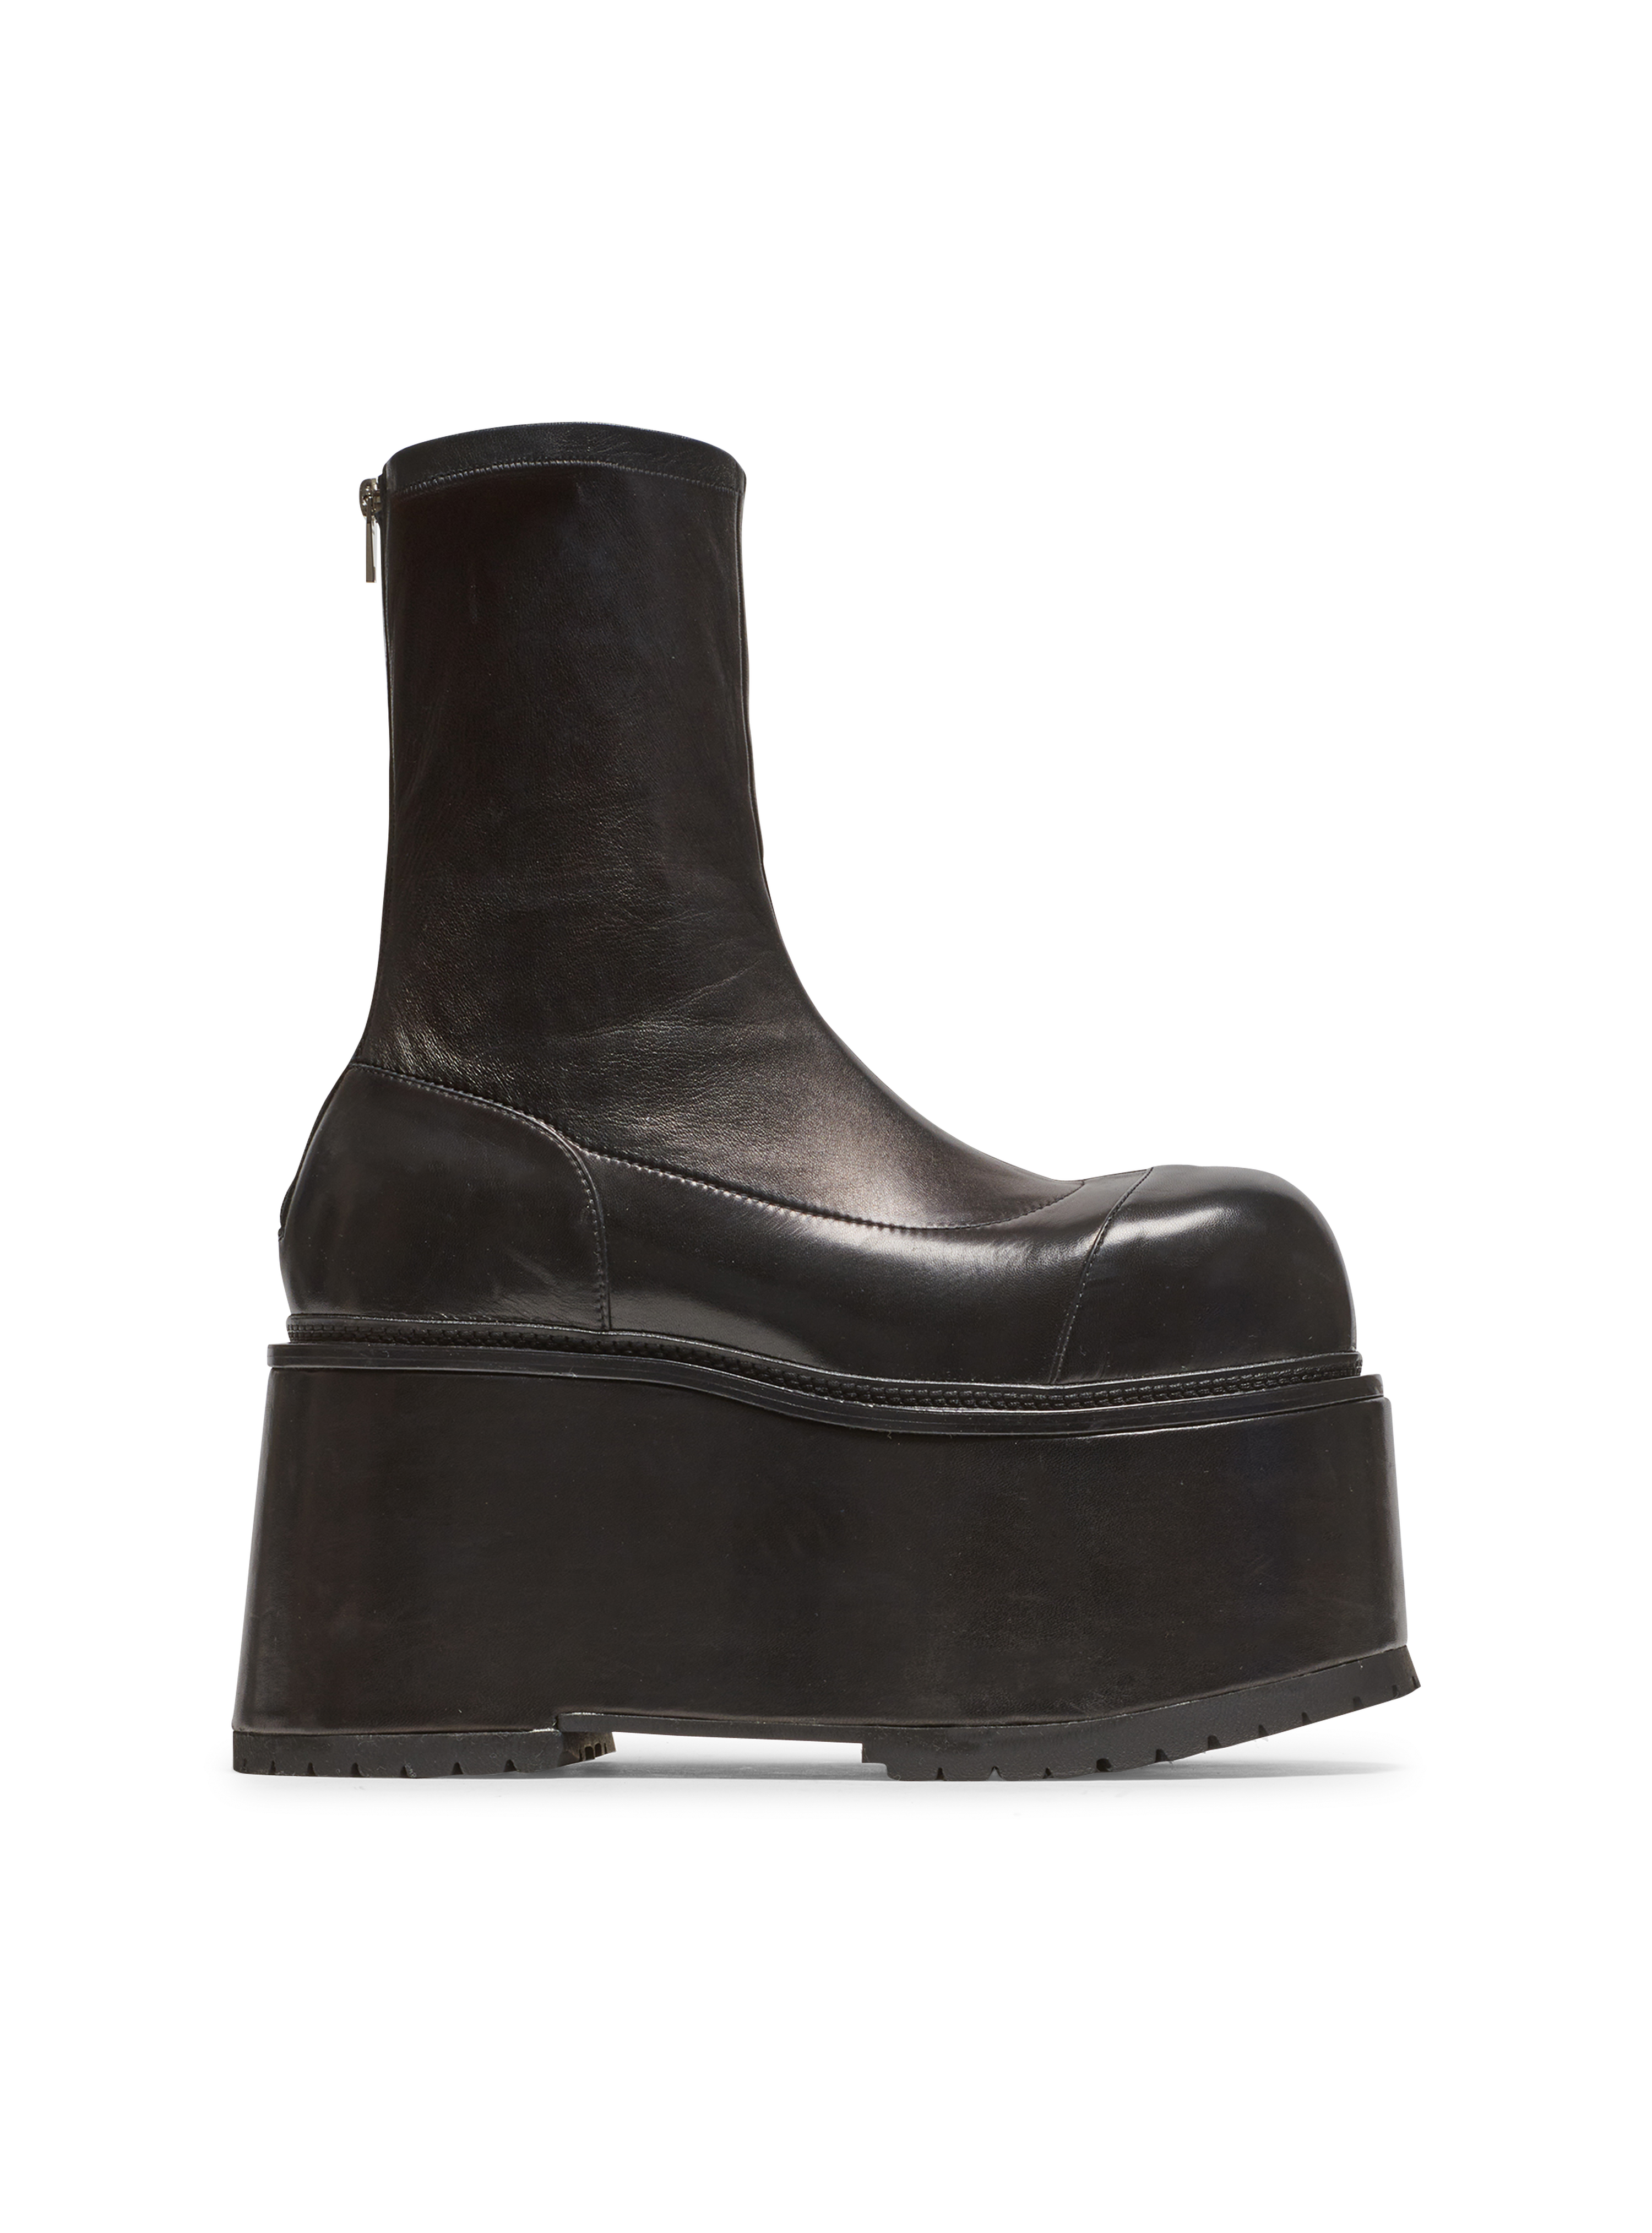 Leather platform boots, black